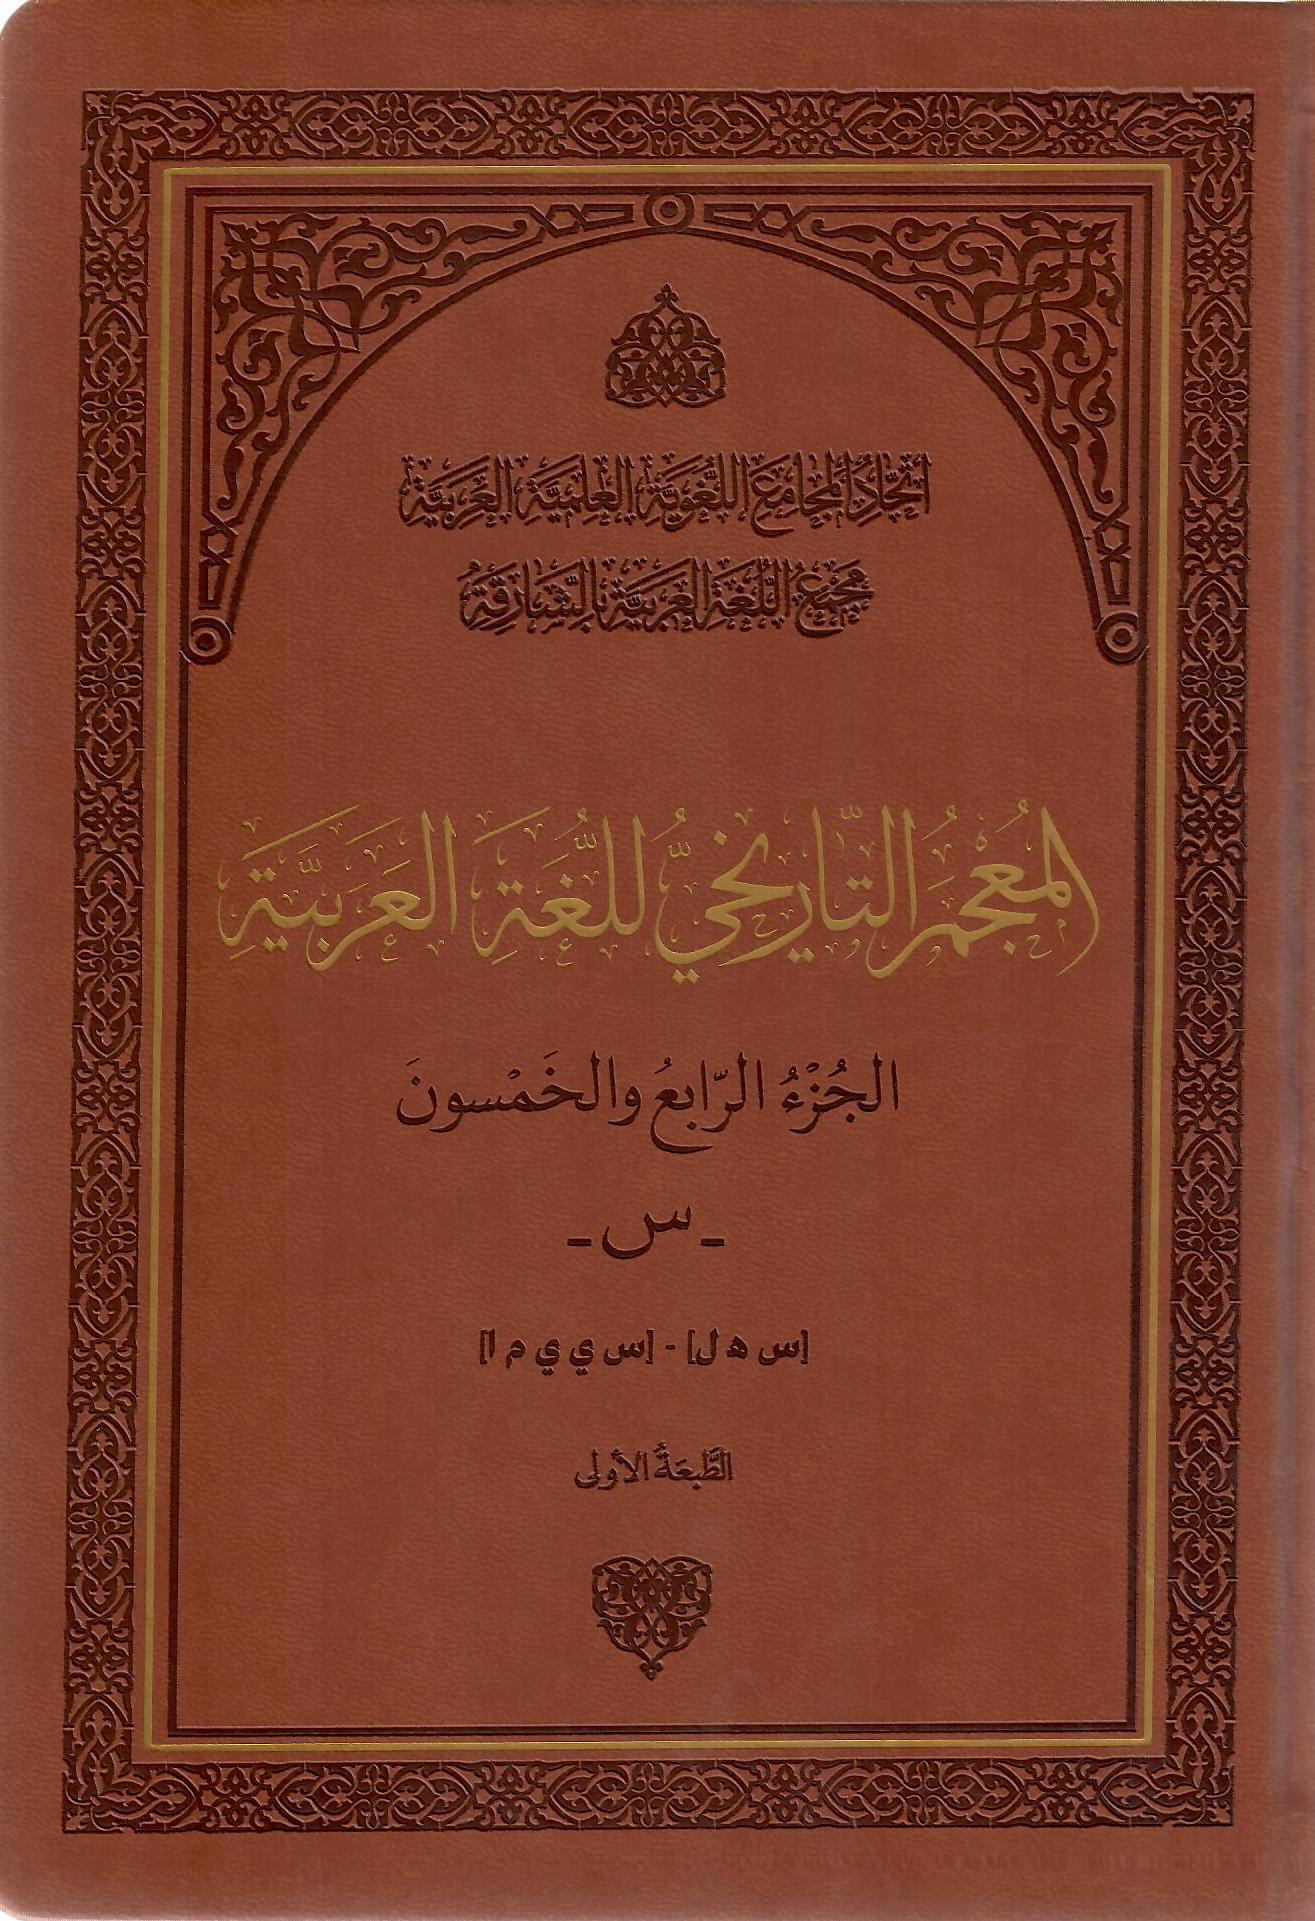 المعجم التاريخي للغة العربية الجزء الرابع والخمسون